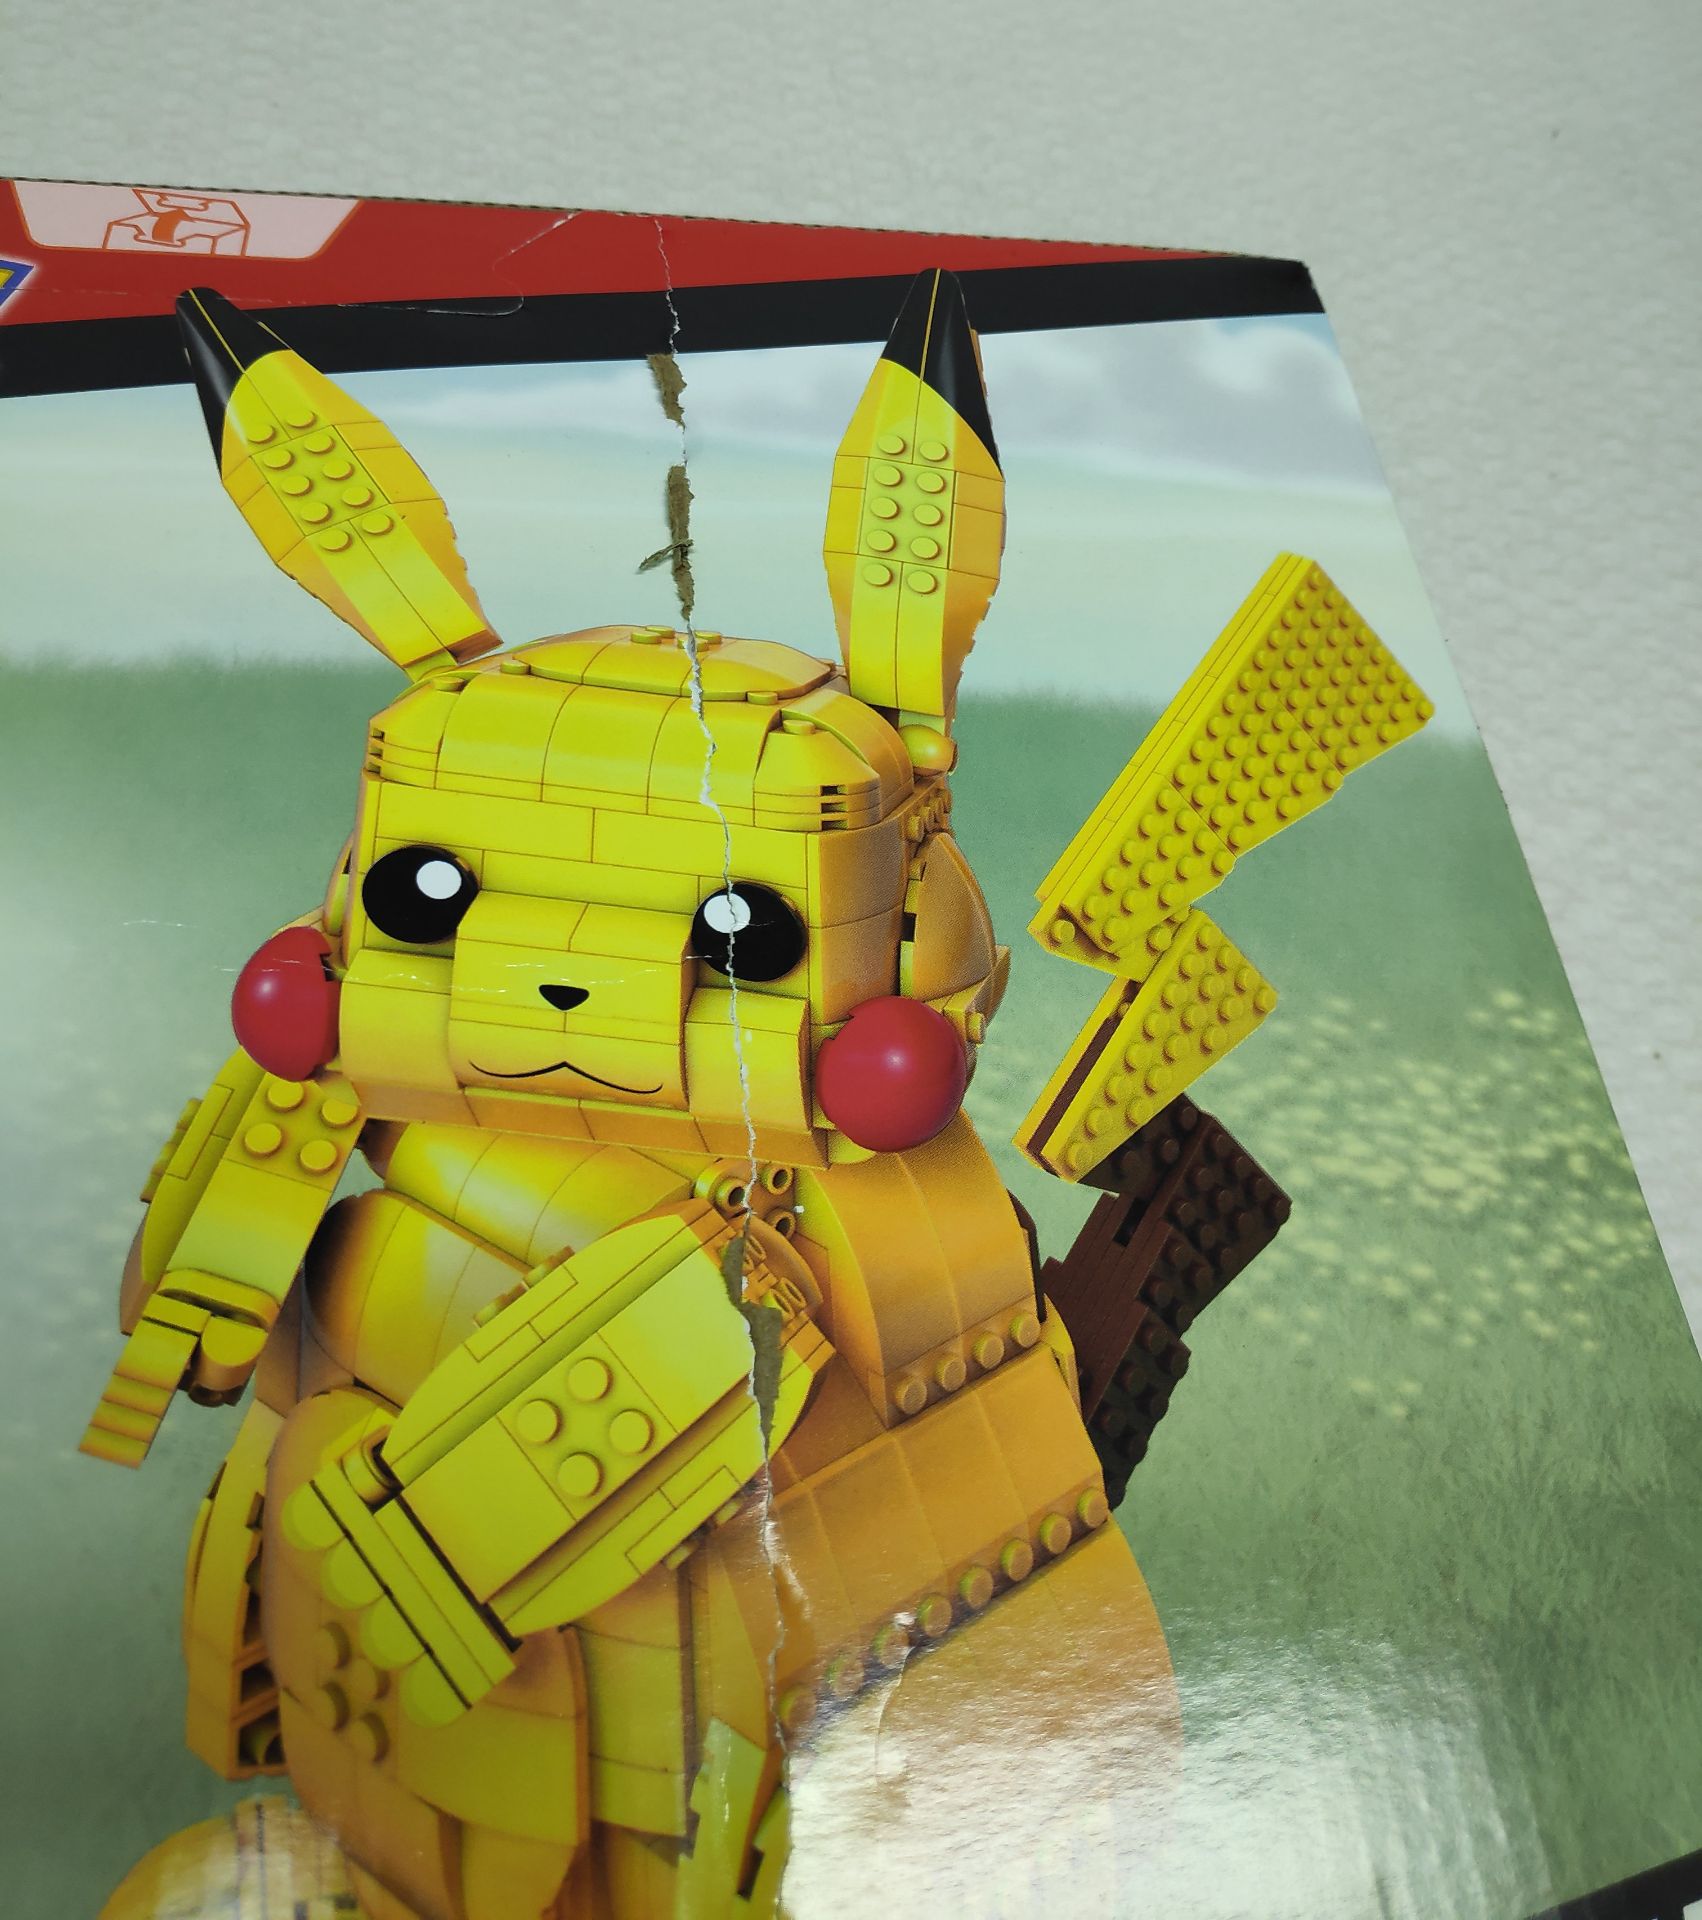 1 x Pokemon Mega Construx Jumbo Pikachu Lego-Style Building Set - New/Boxed - Image 6 of 7